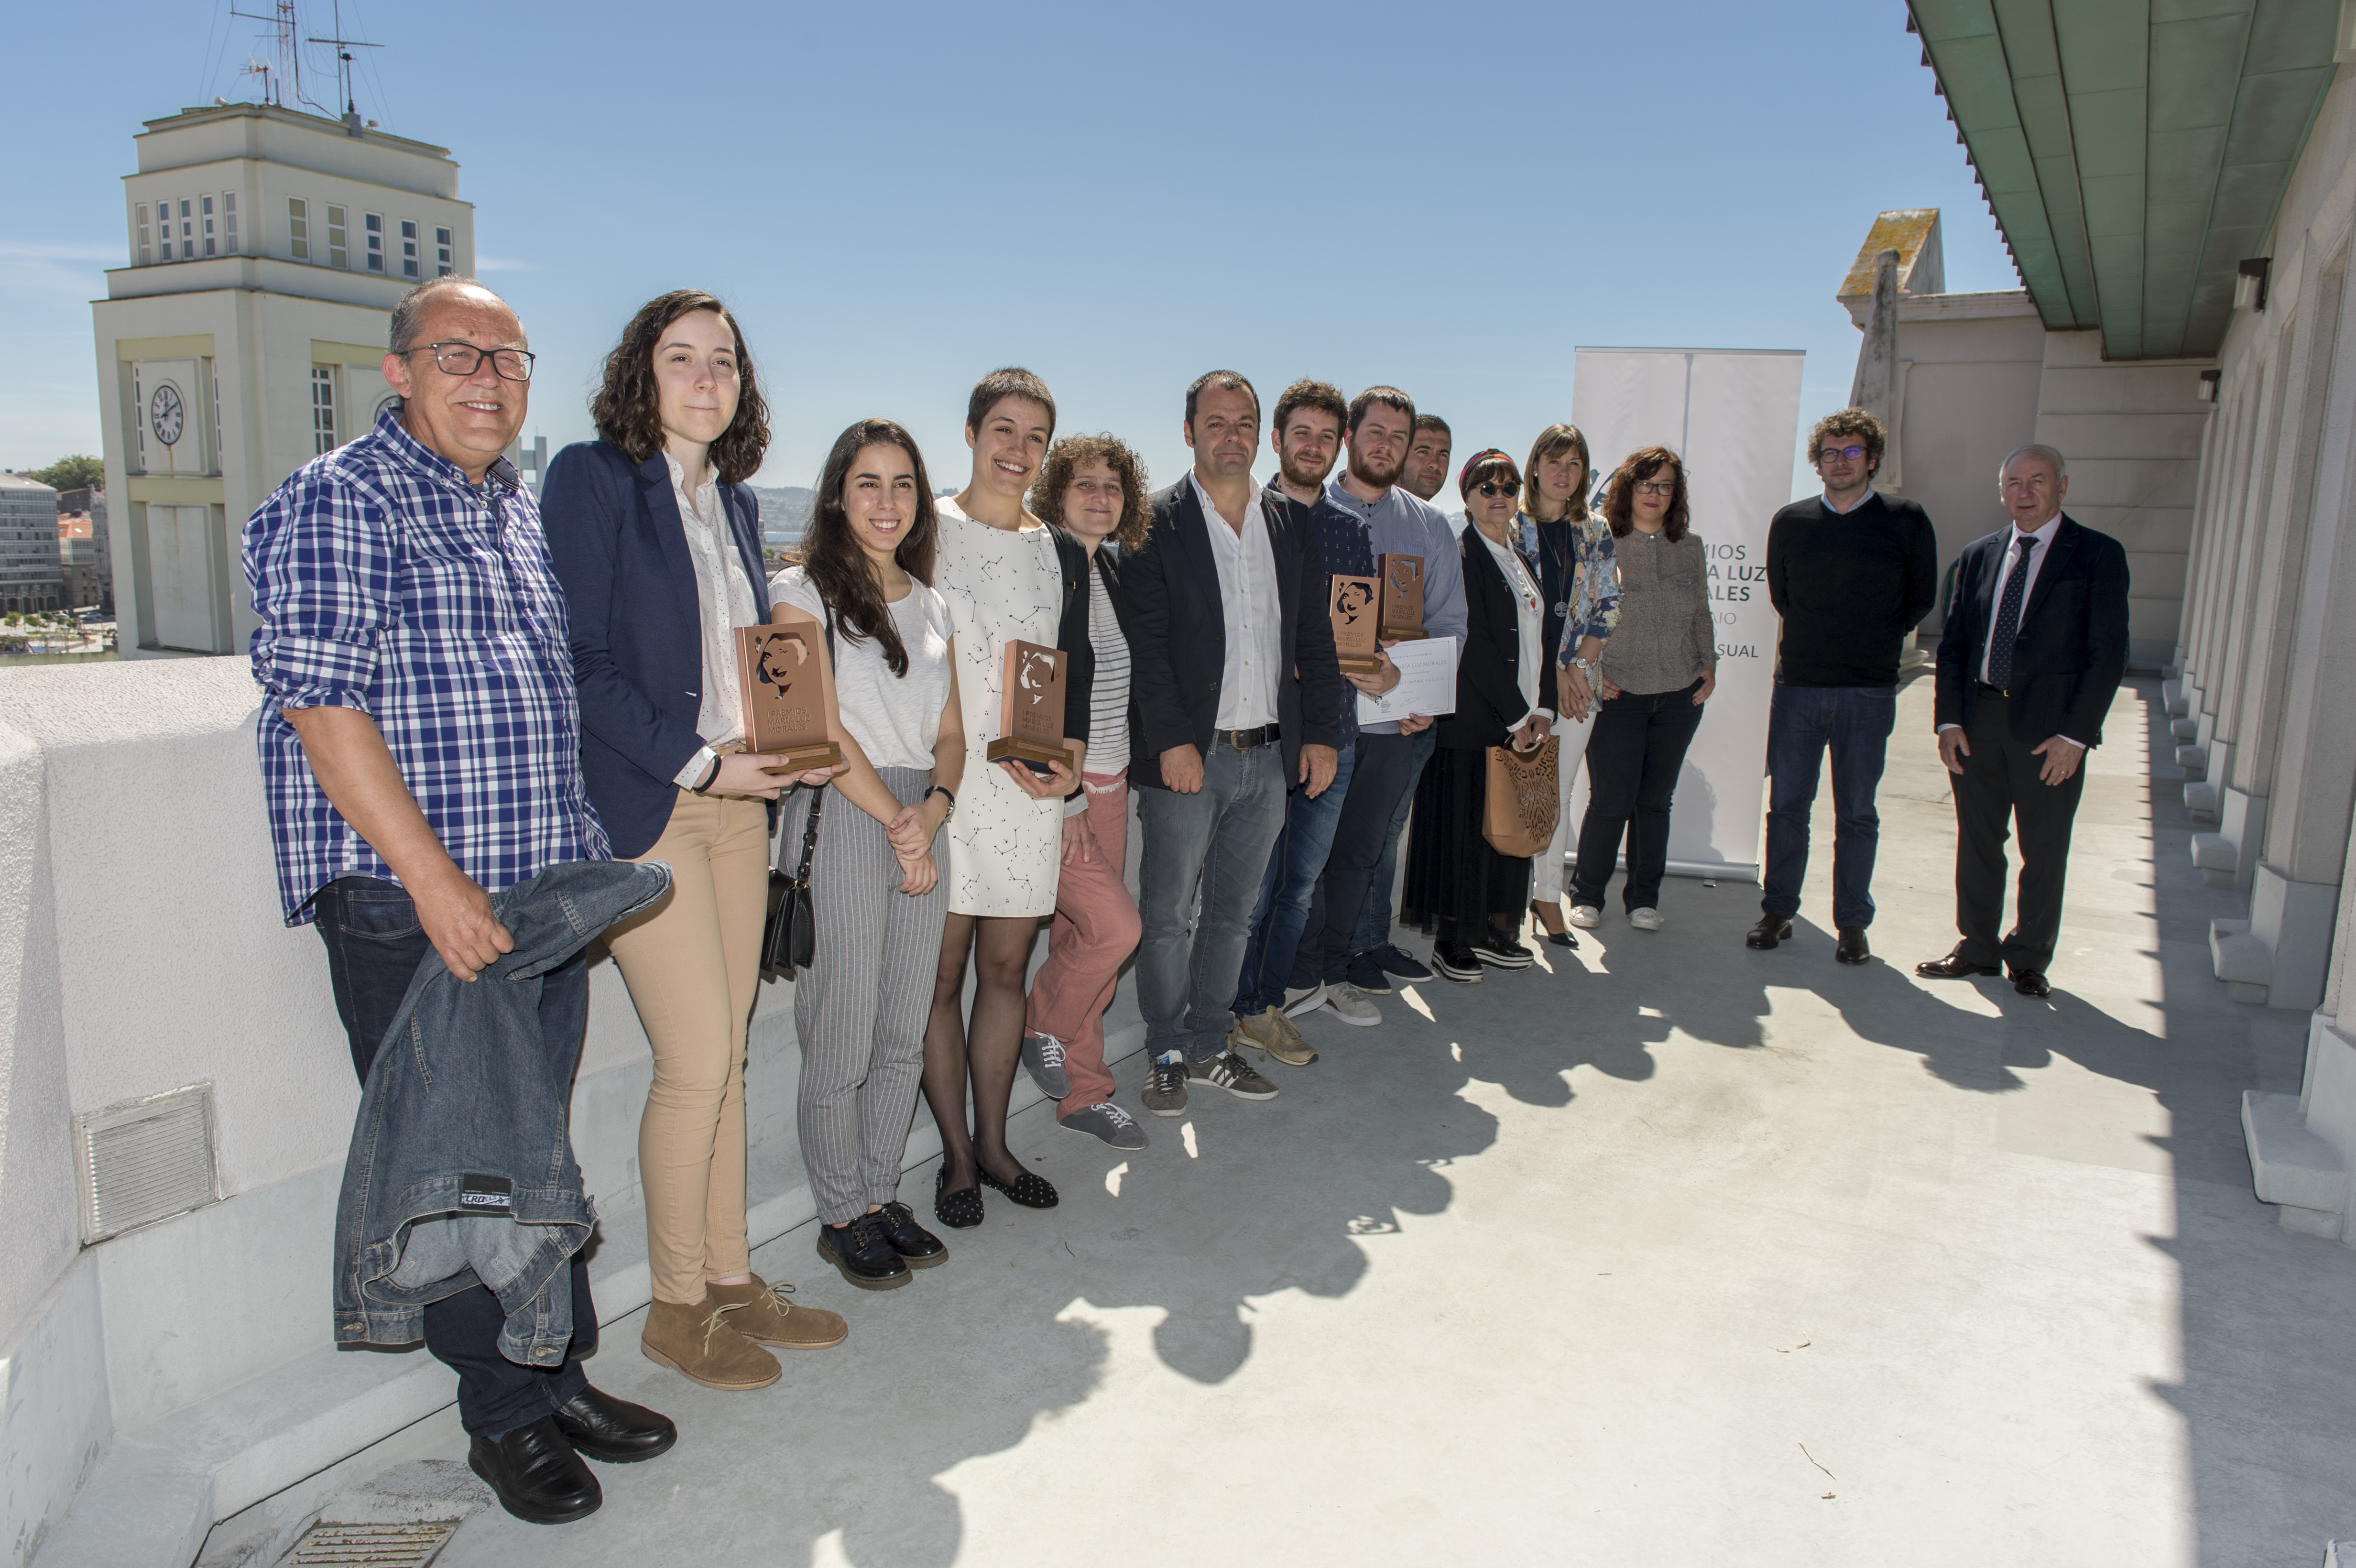 A Academia Galega do Audiovisual e as catro deputacións premian o labor de cinco novos investigadores galegos